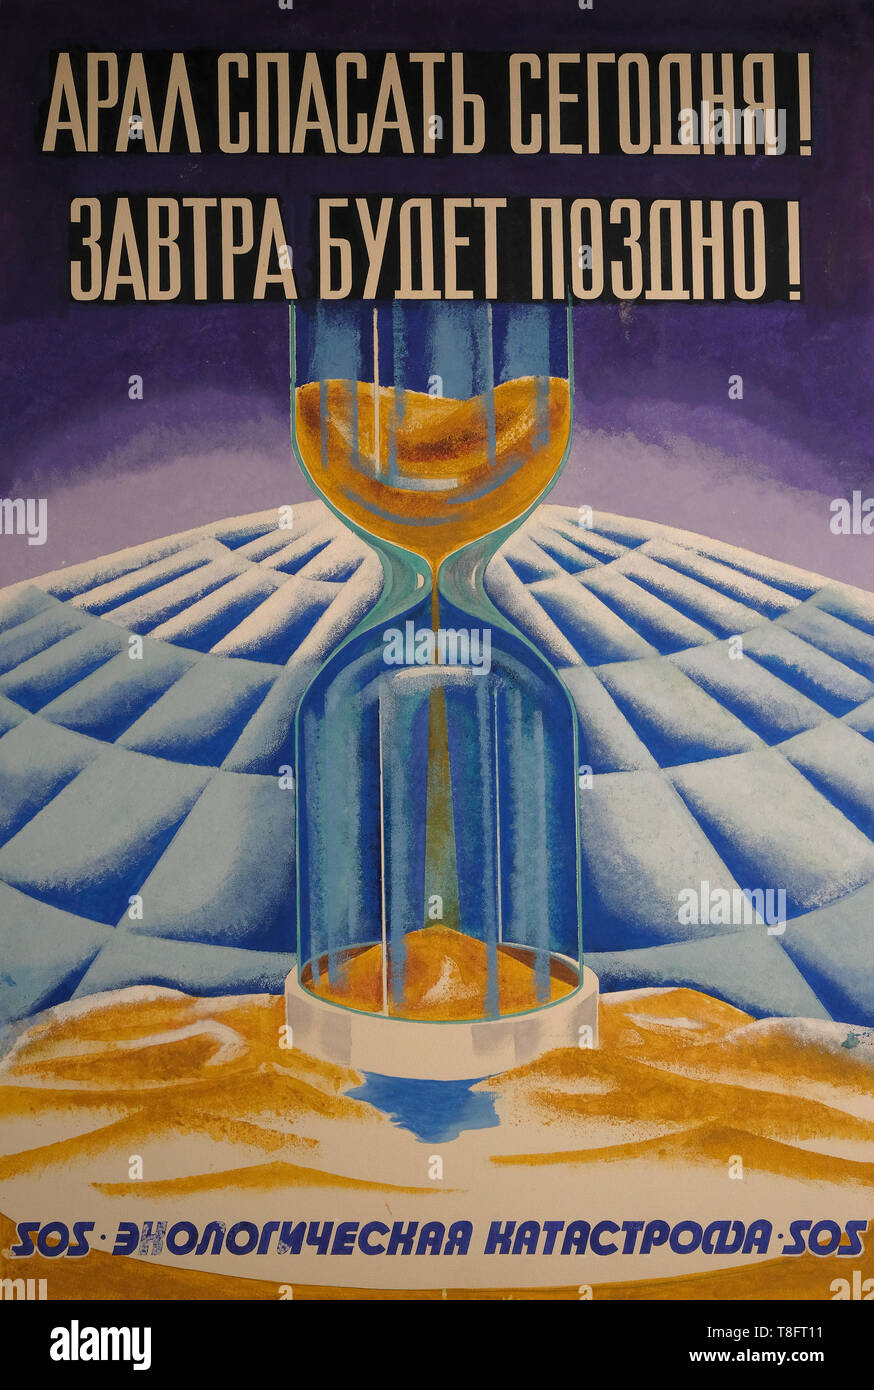 Une affiche de l'époque soviétique des années 1950 représentant une catastrophe écologique. Ouzbékistan Banque D'Images